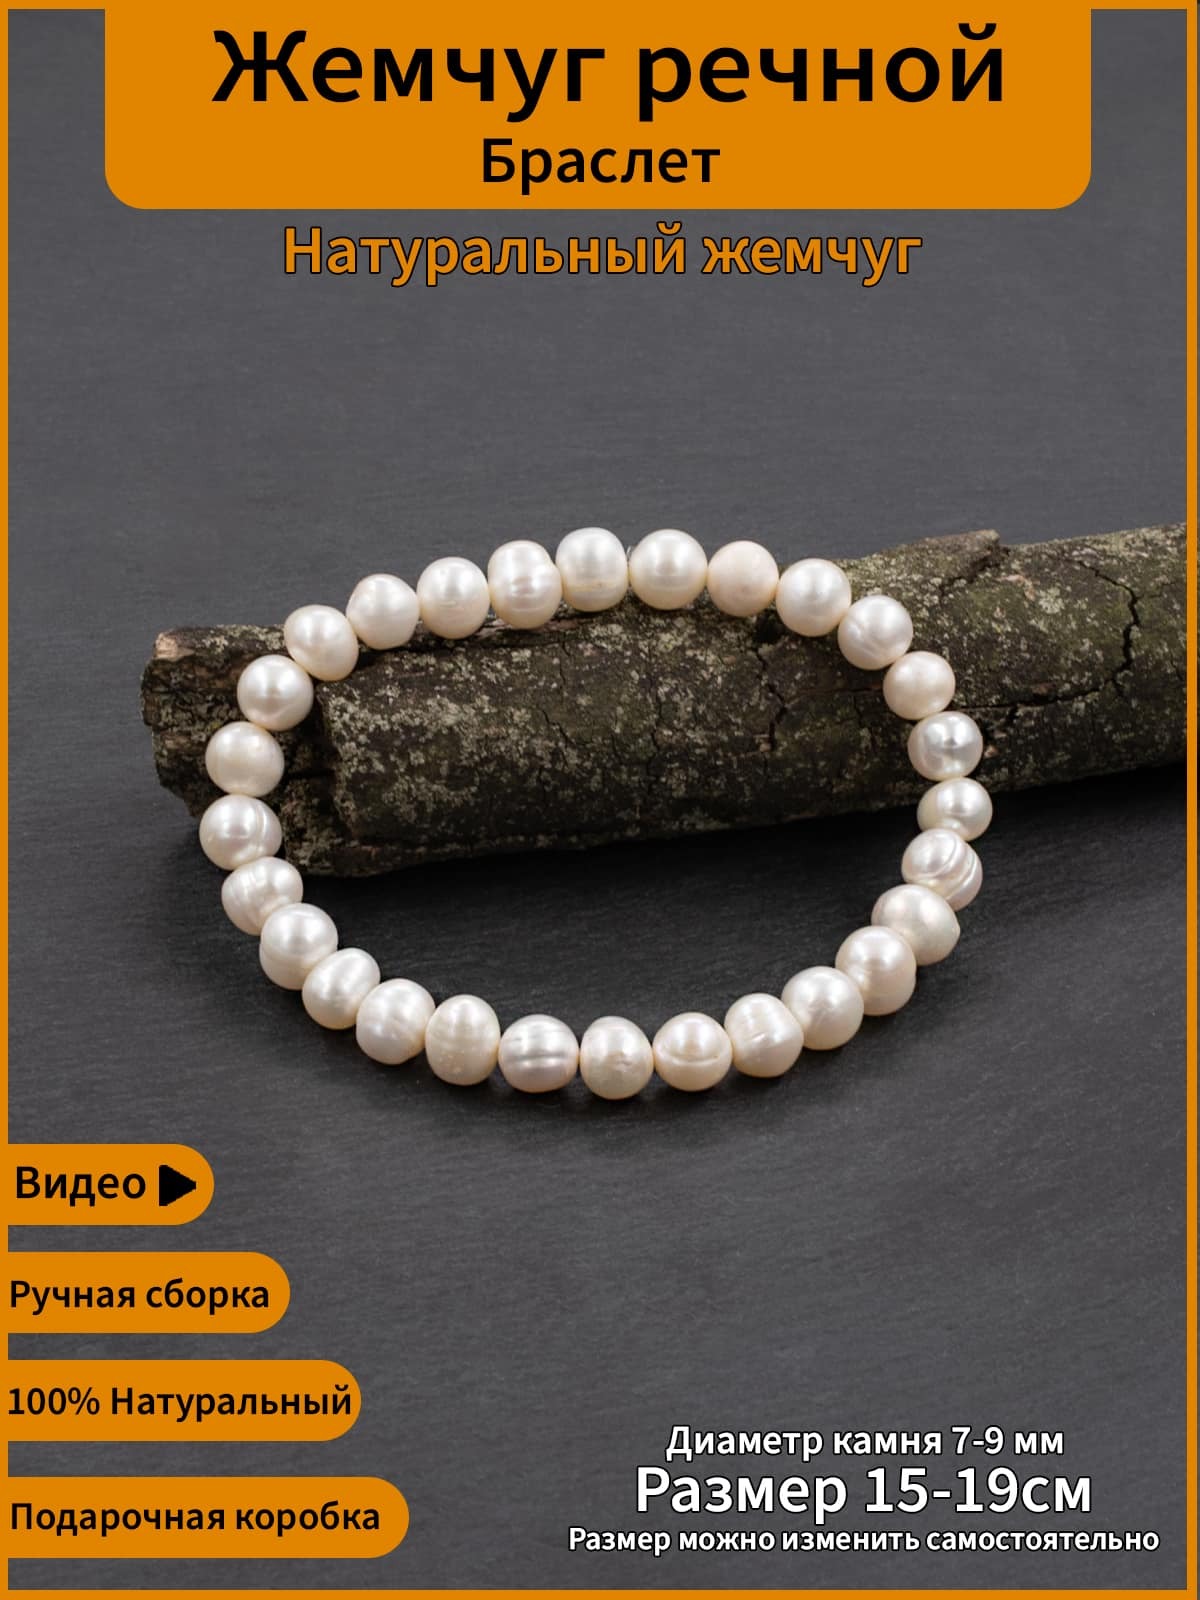 Купить авторские браслеты из жемчуга в Москве с доставкой по России